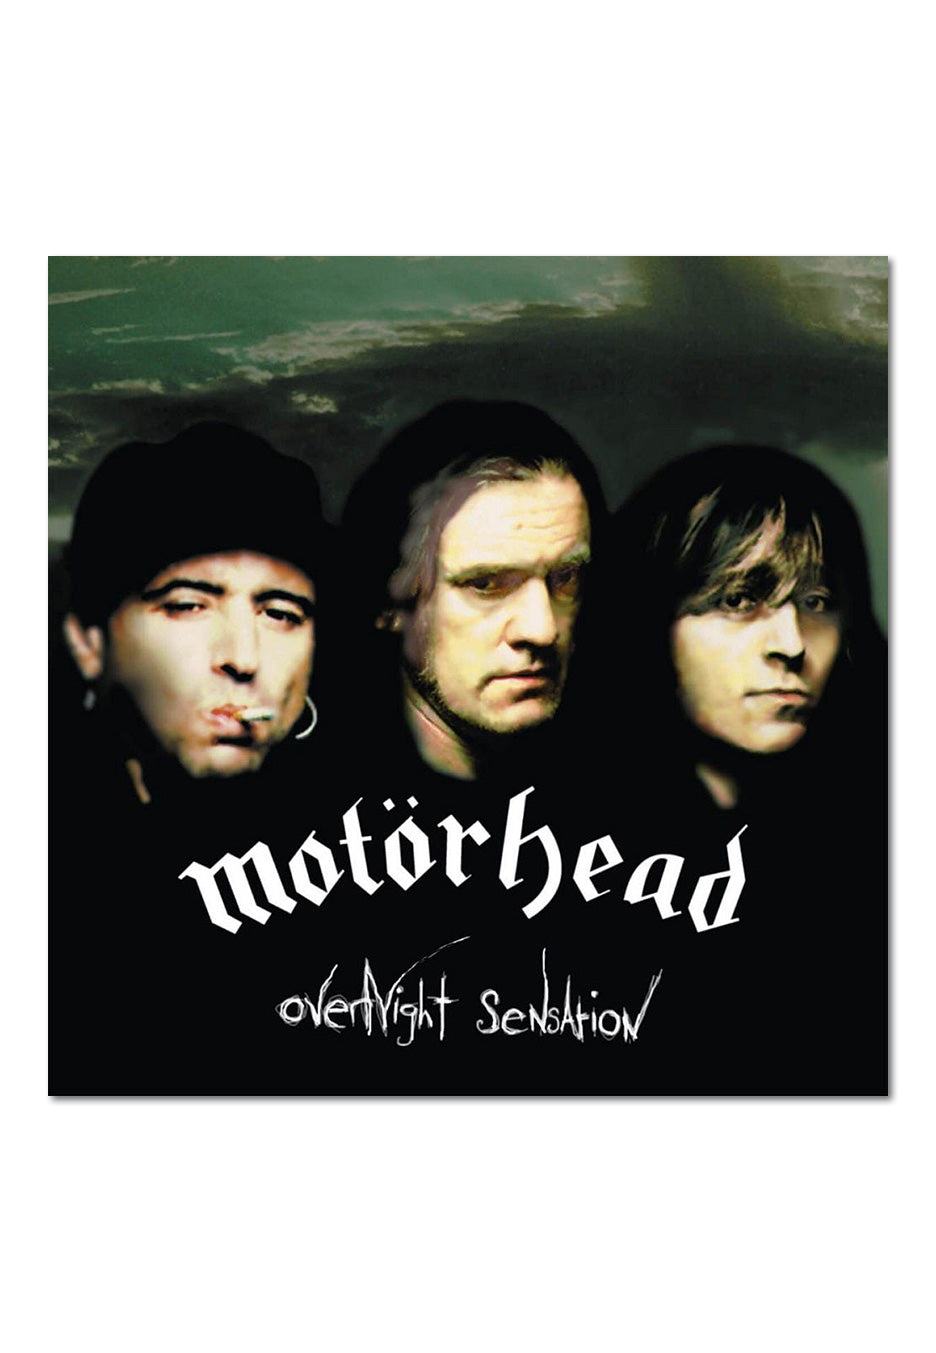 Motörhead - Overnight Sensation - Digipak CD